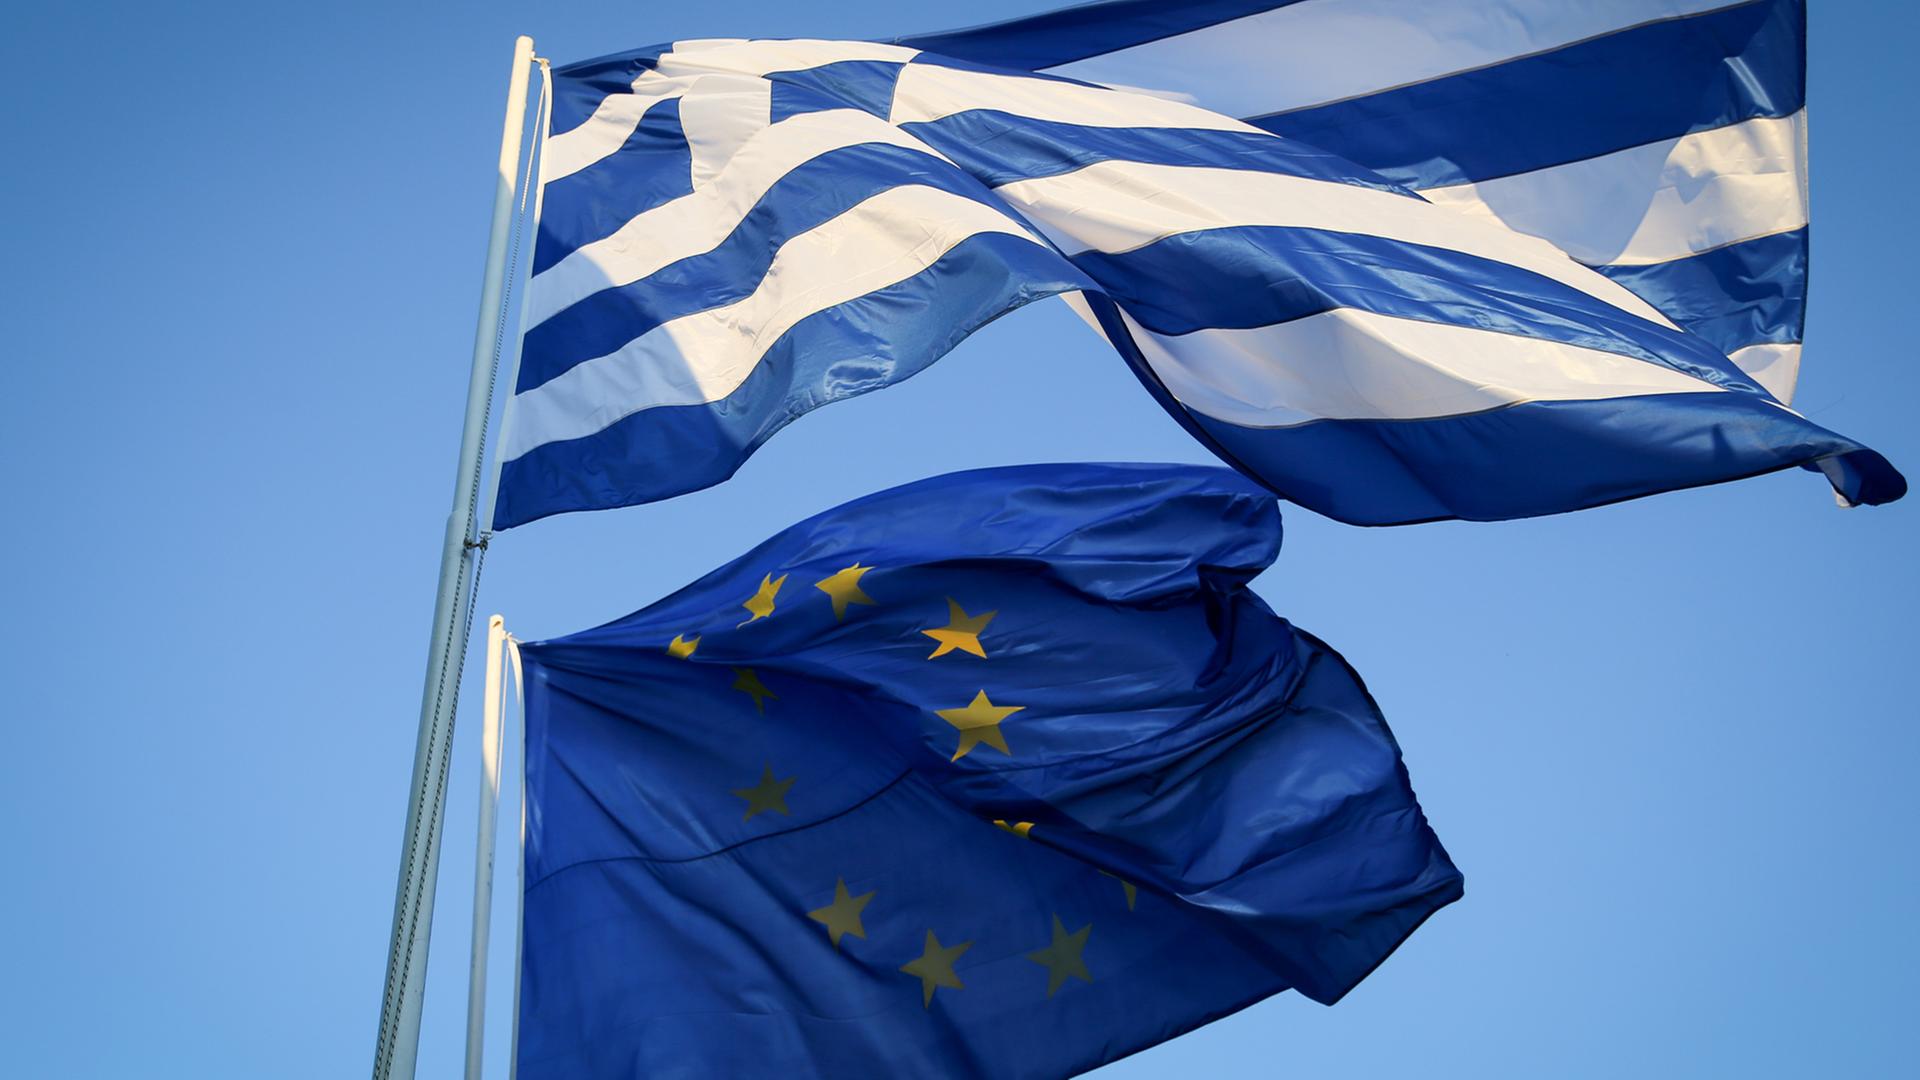 Die griechische und europäische Fahne